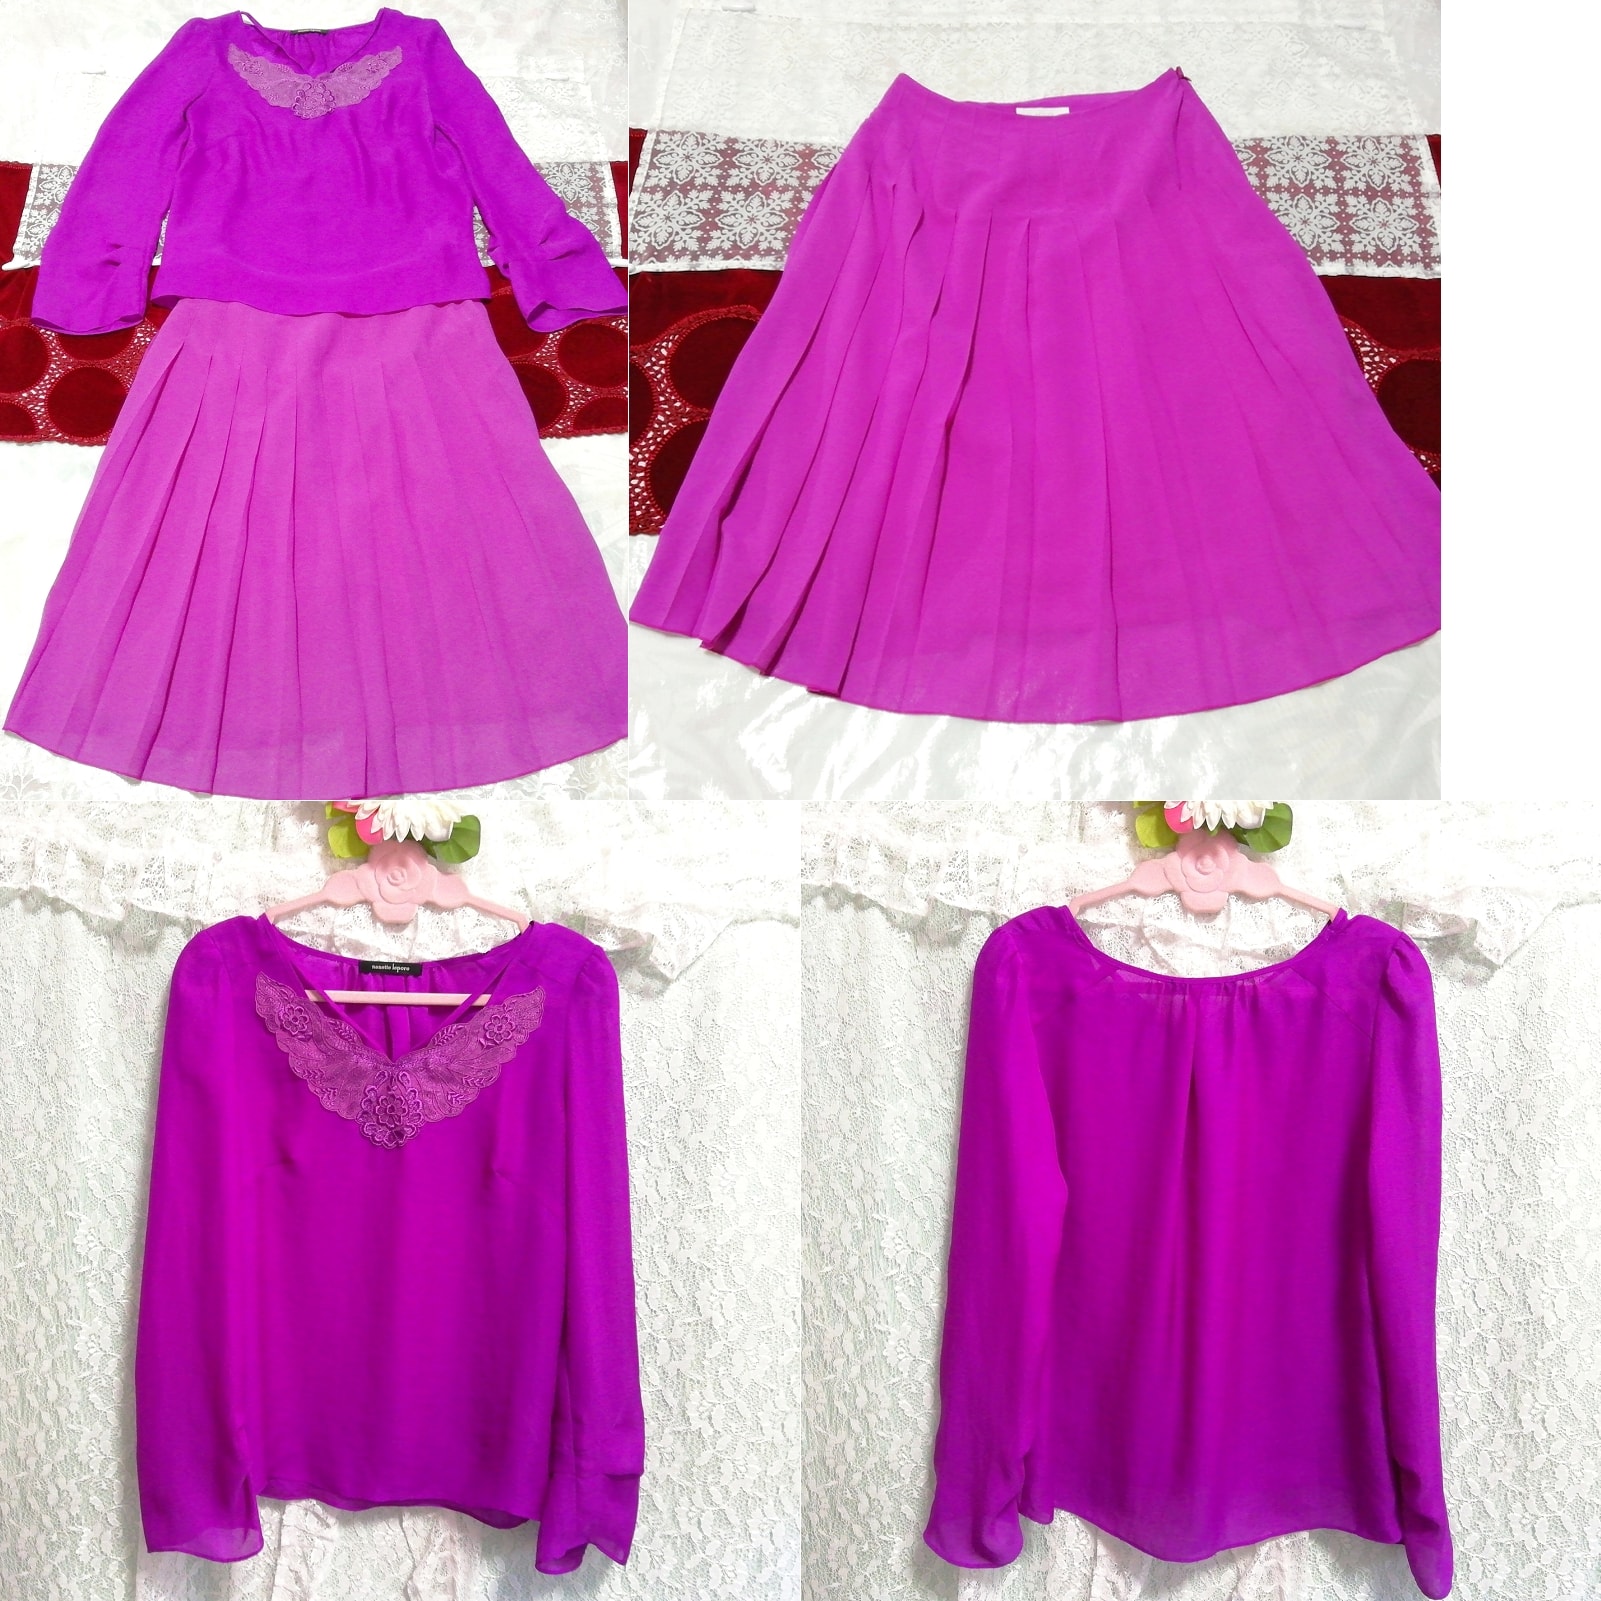 紫色雪纺长袍睡衣雪纺裙子 2P, 时尚, 女士时装, 睡衣